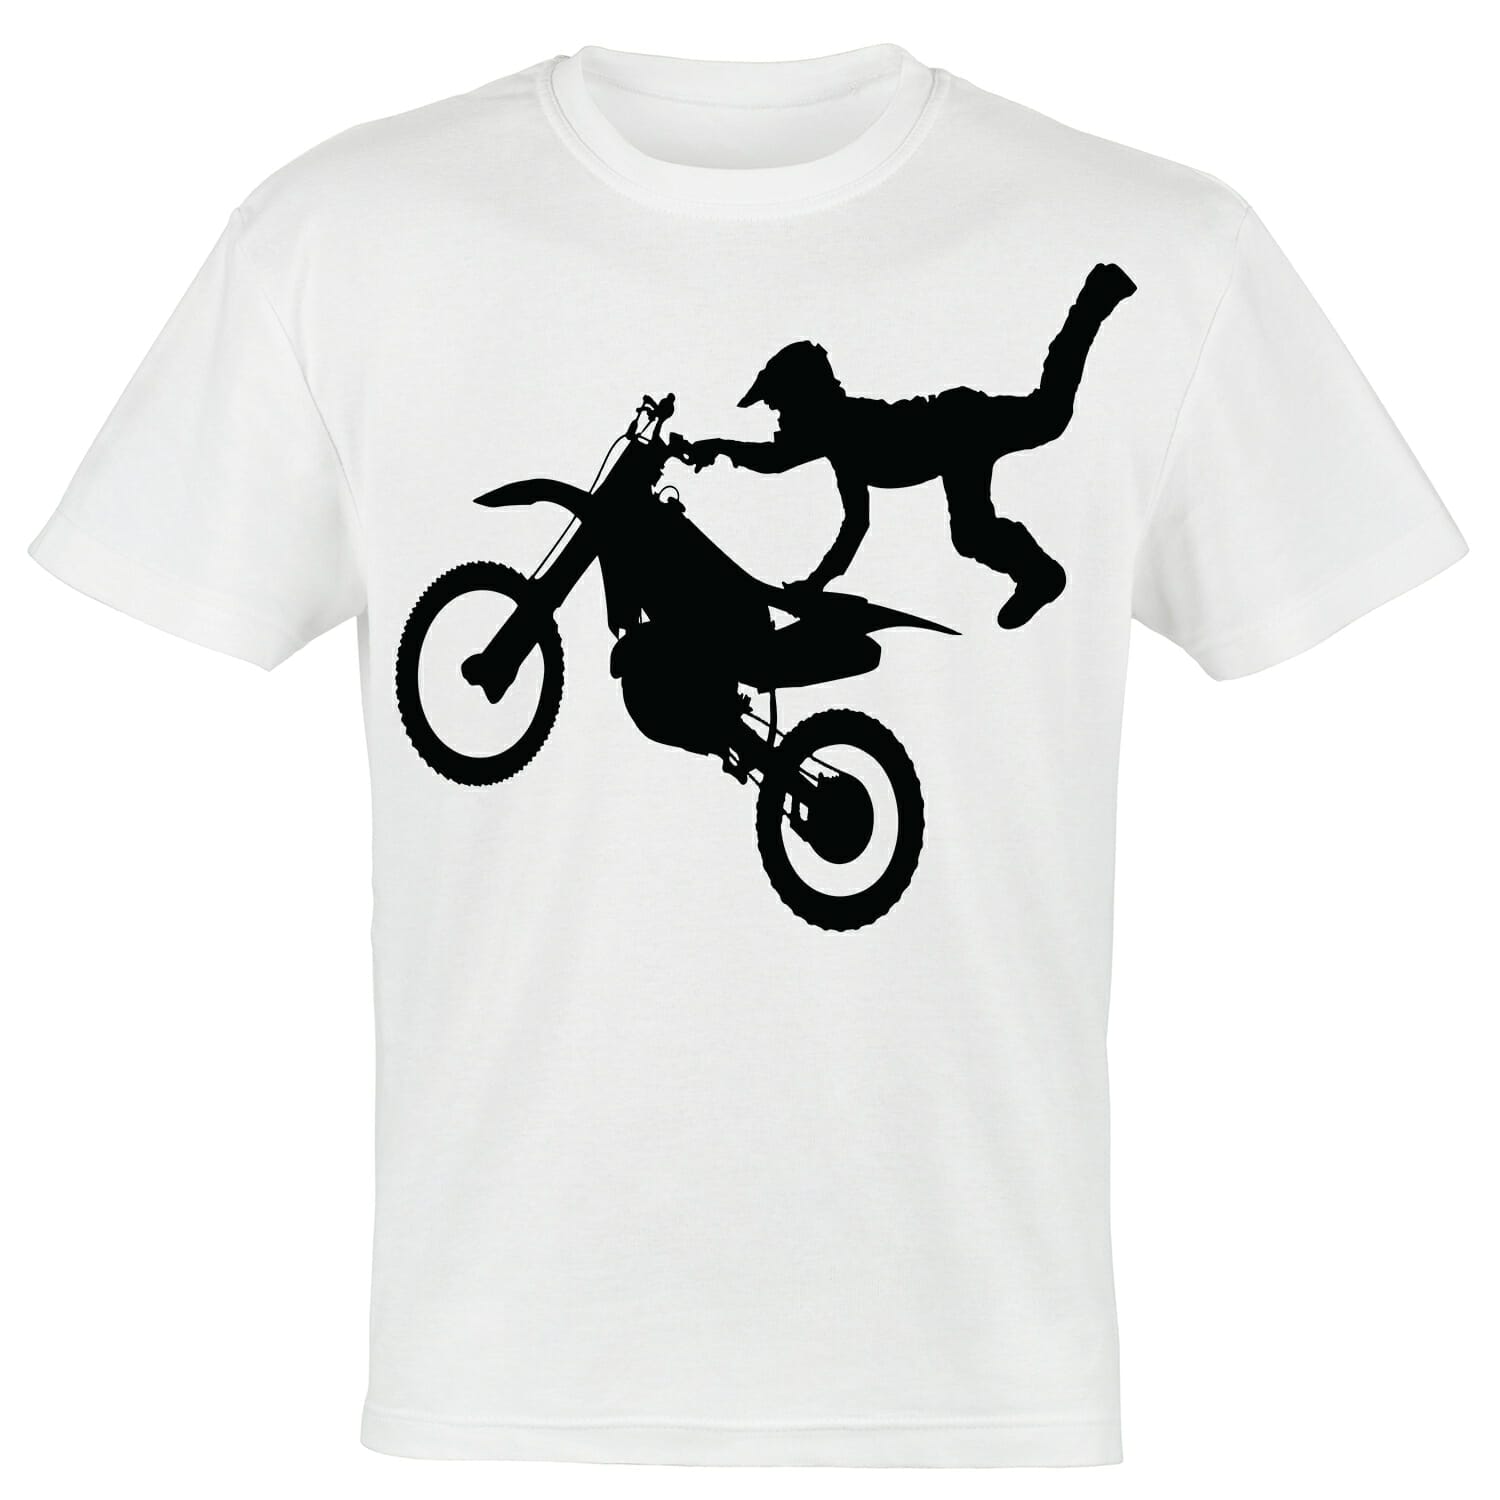 Dirt Bike Racer Tshirt Design for White Tshirts